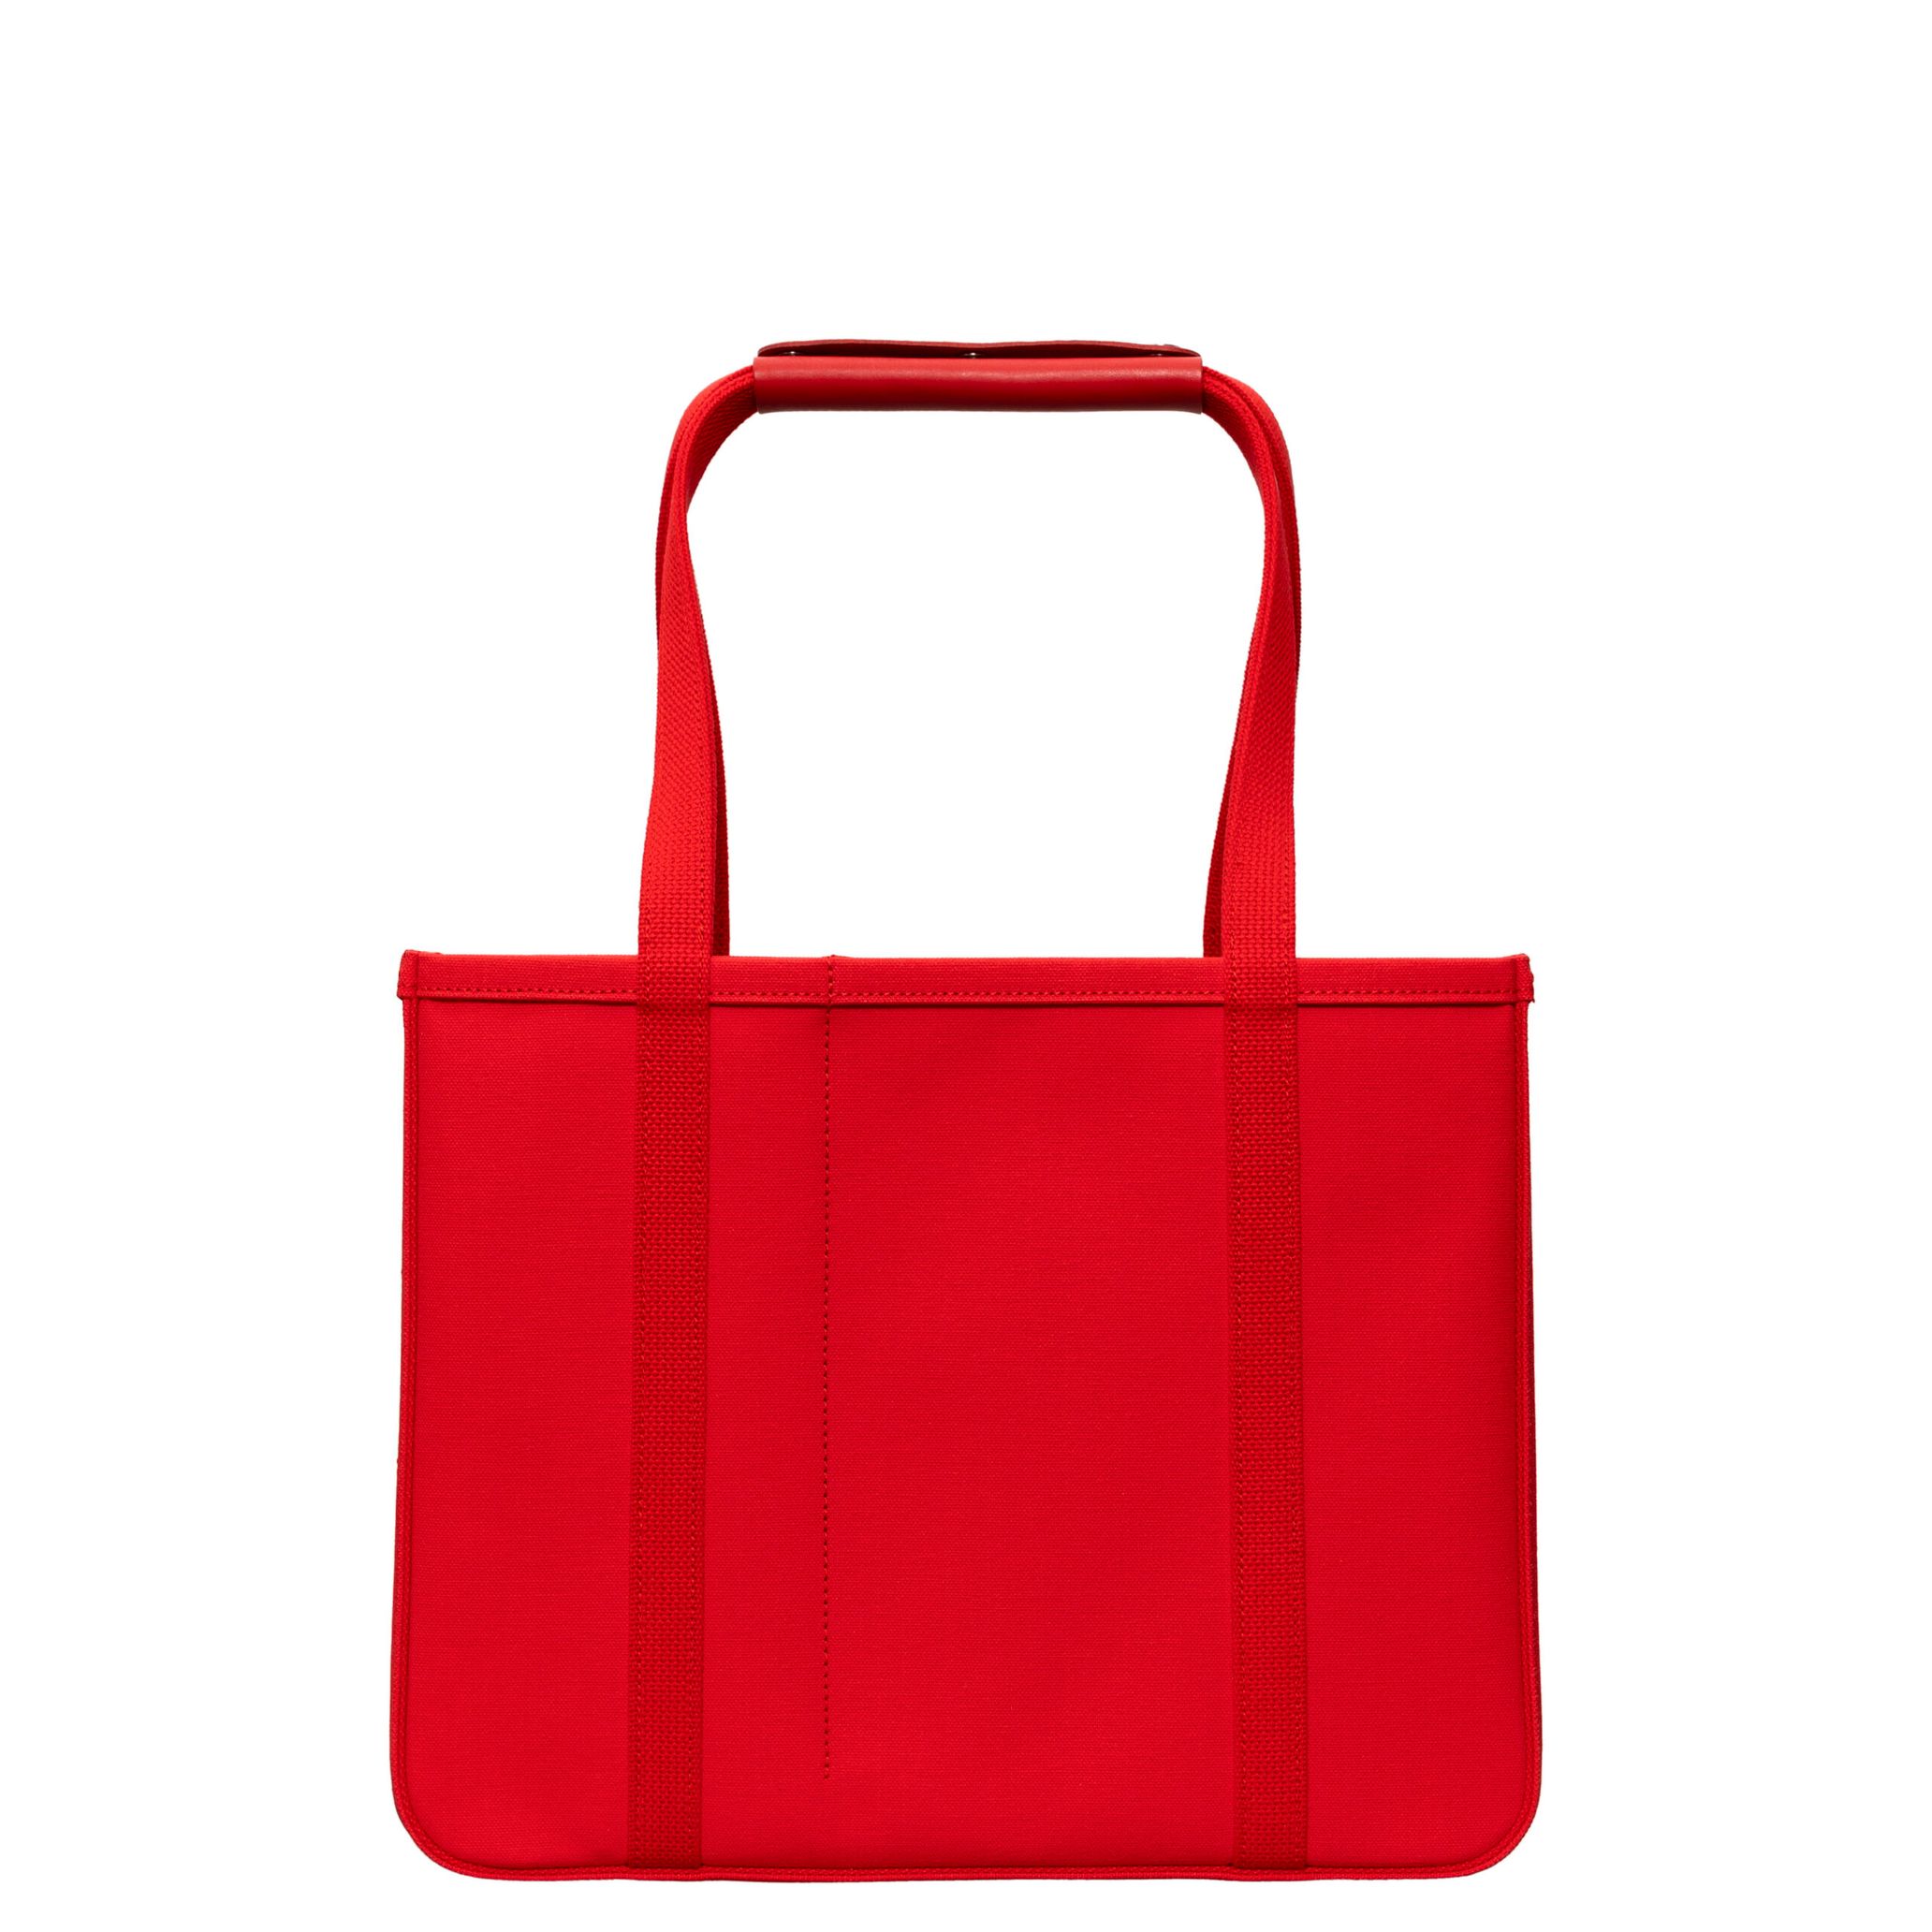 チャコリ」が赤のトートバッグをドーバーギンザ限定で発売 - TOKION